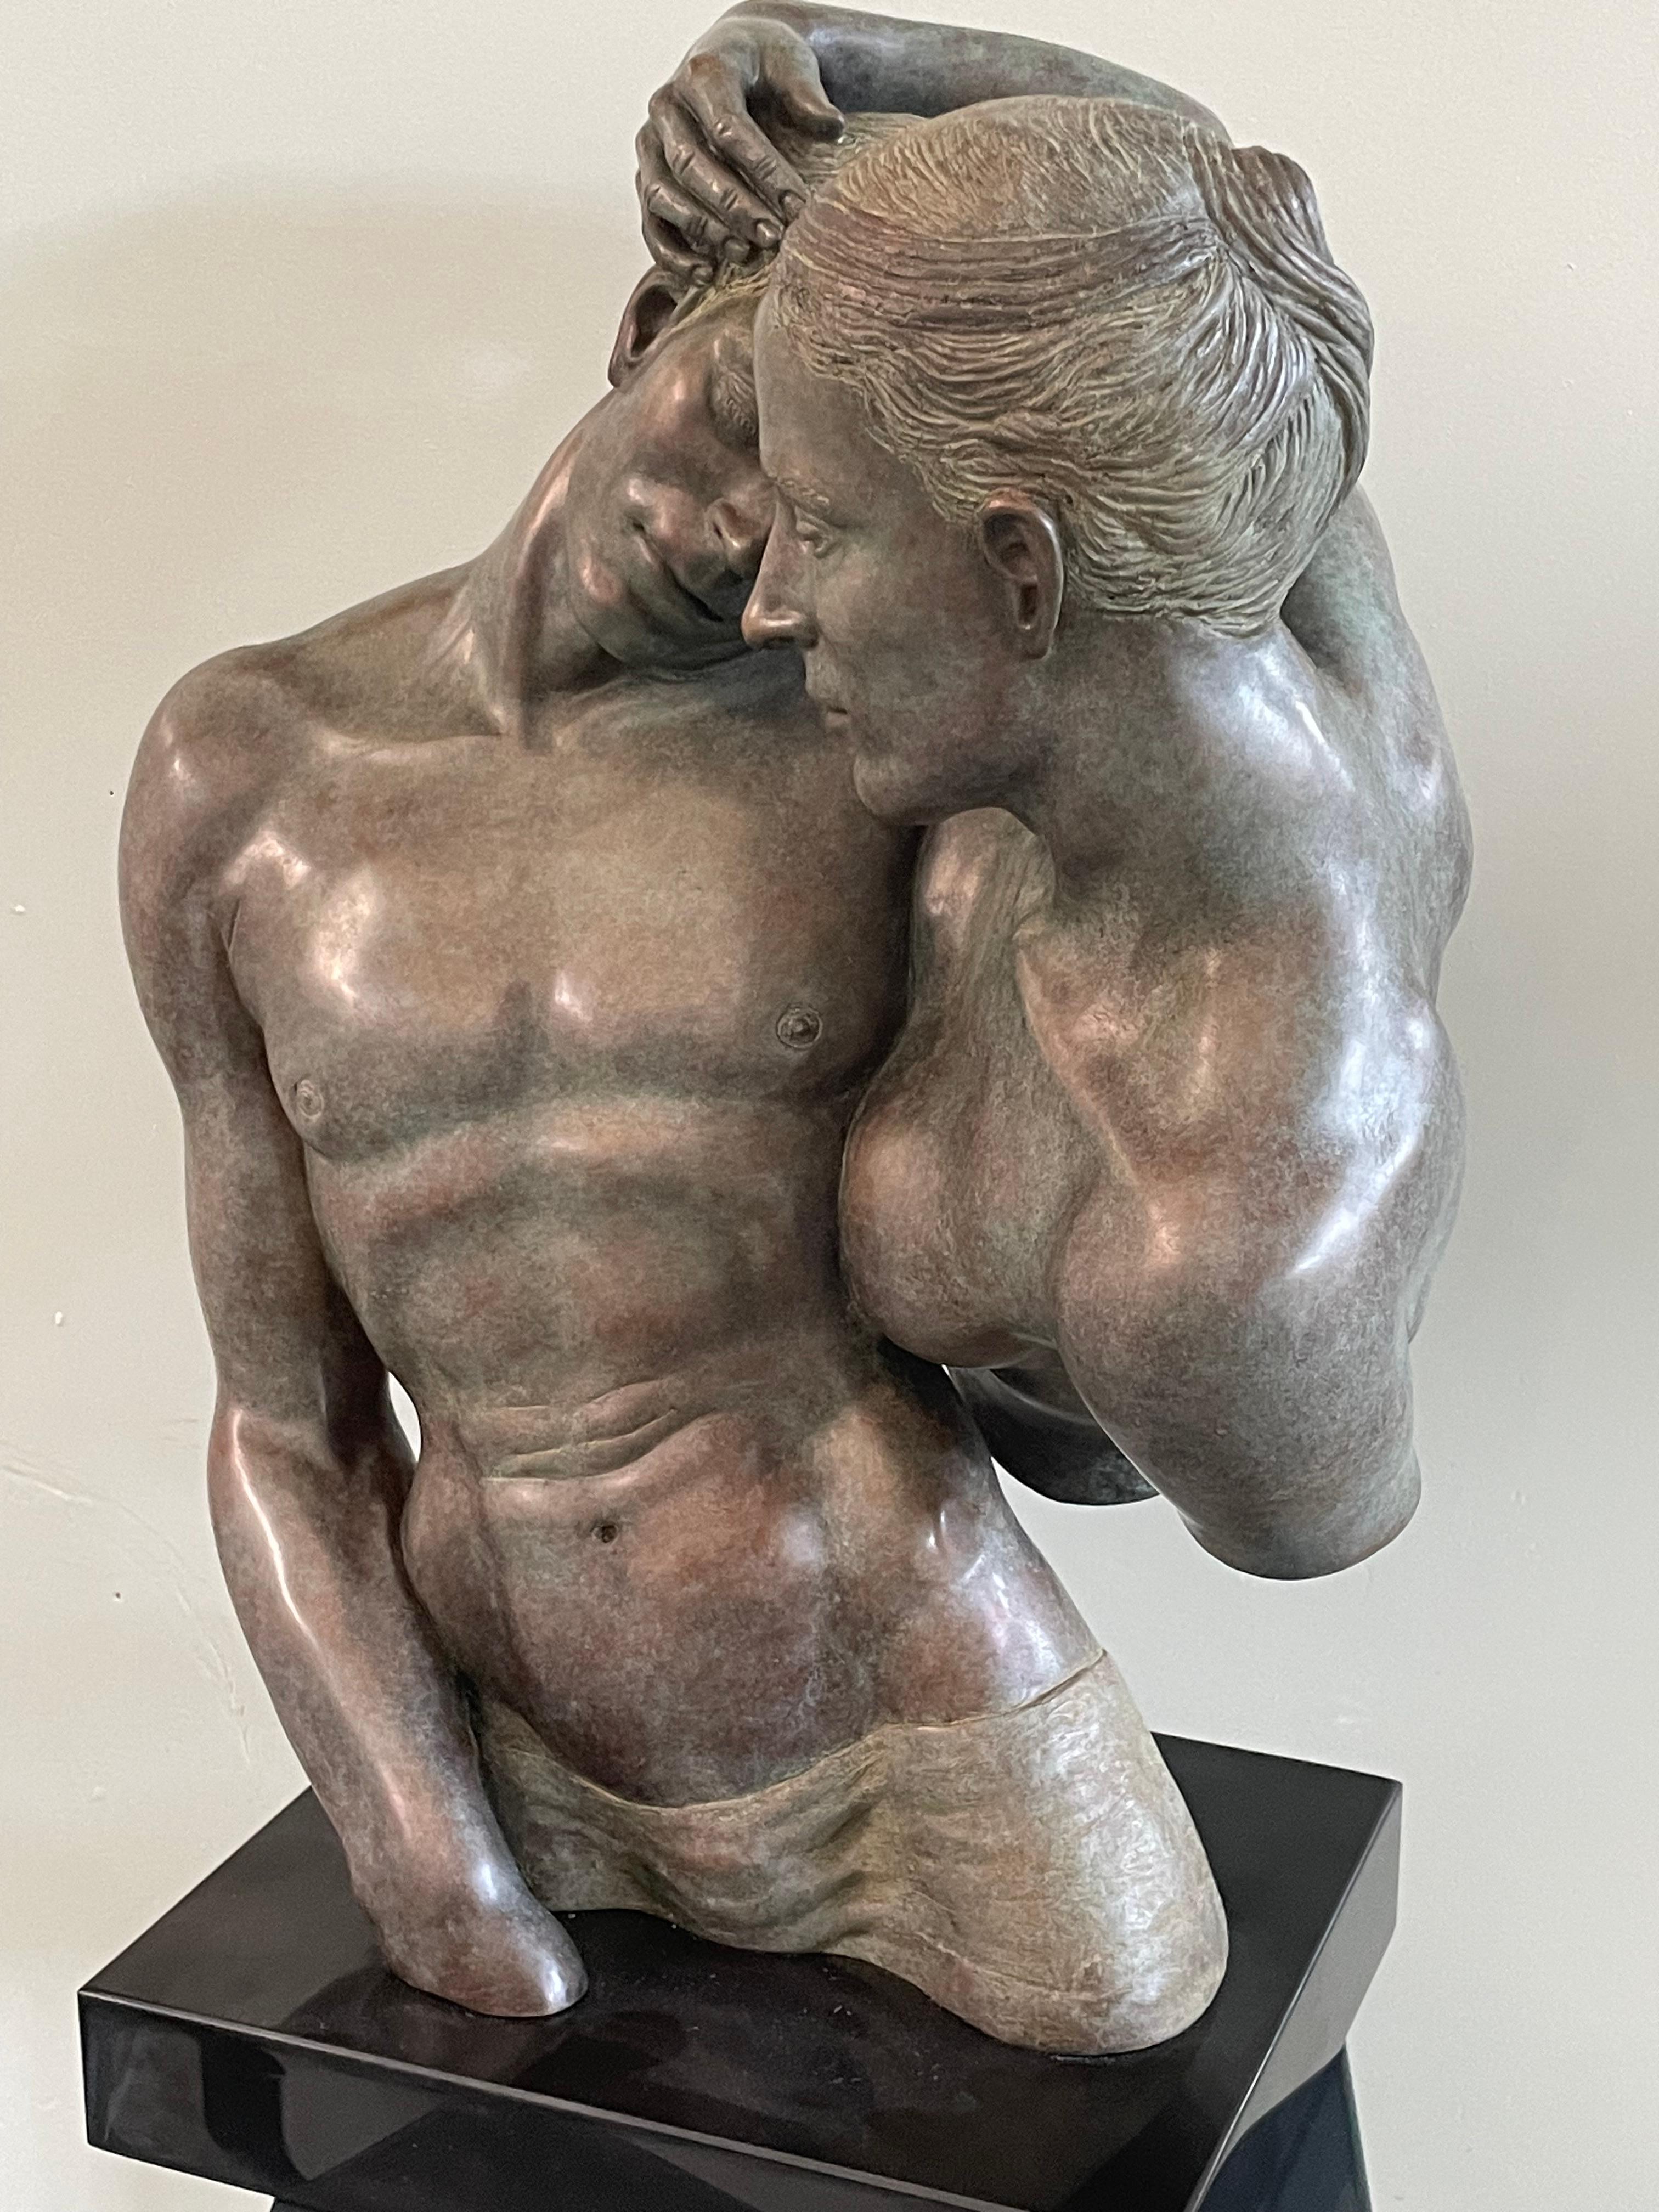 Sculpture en bronze « Awareness » représentant des nus, mythologie en stock 
Les sculptures de Margot Homan (1956, Oss) témoignent d'une parfaite maîtrise de l'artisanat ancien du modelage et de la sculpture, avec lequel elle développe